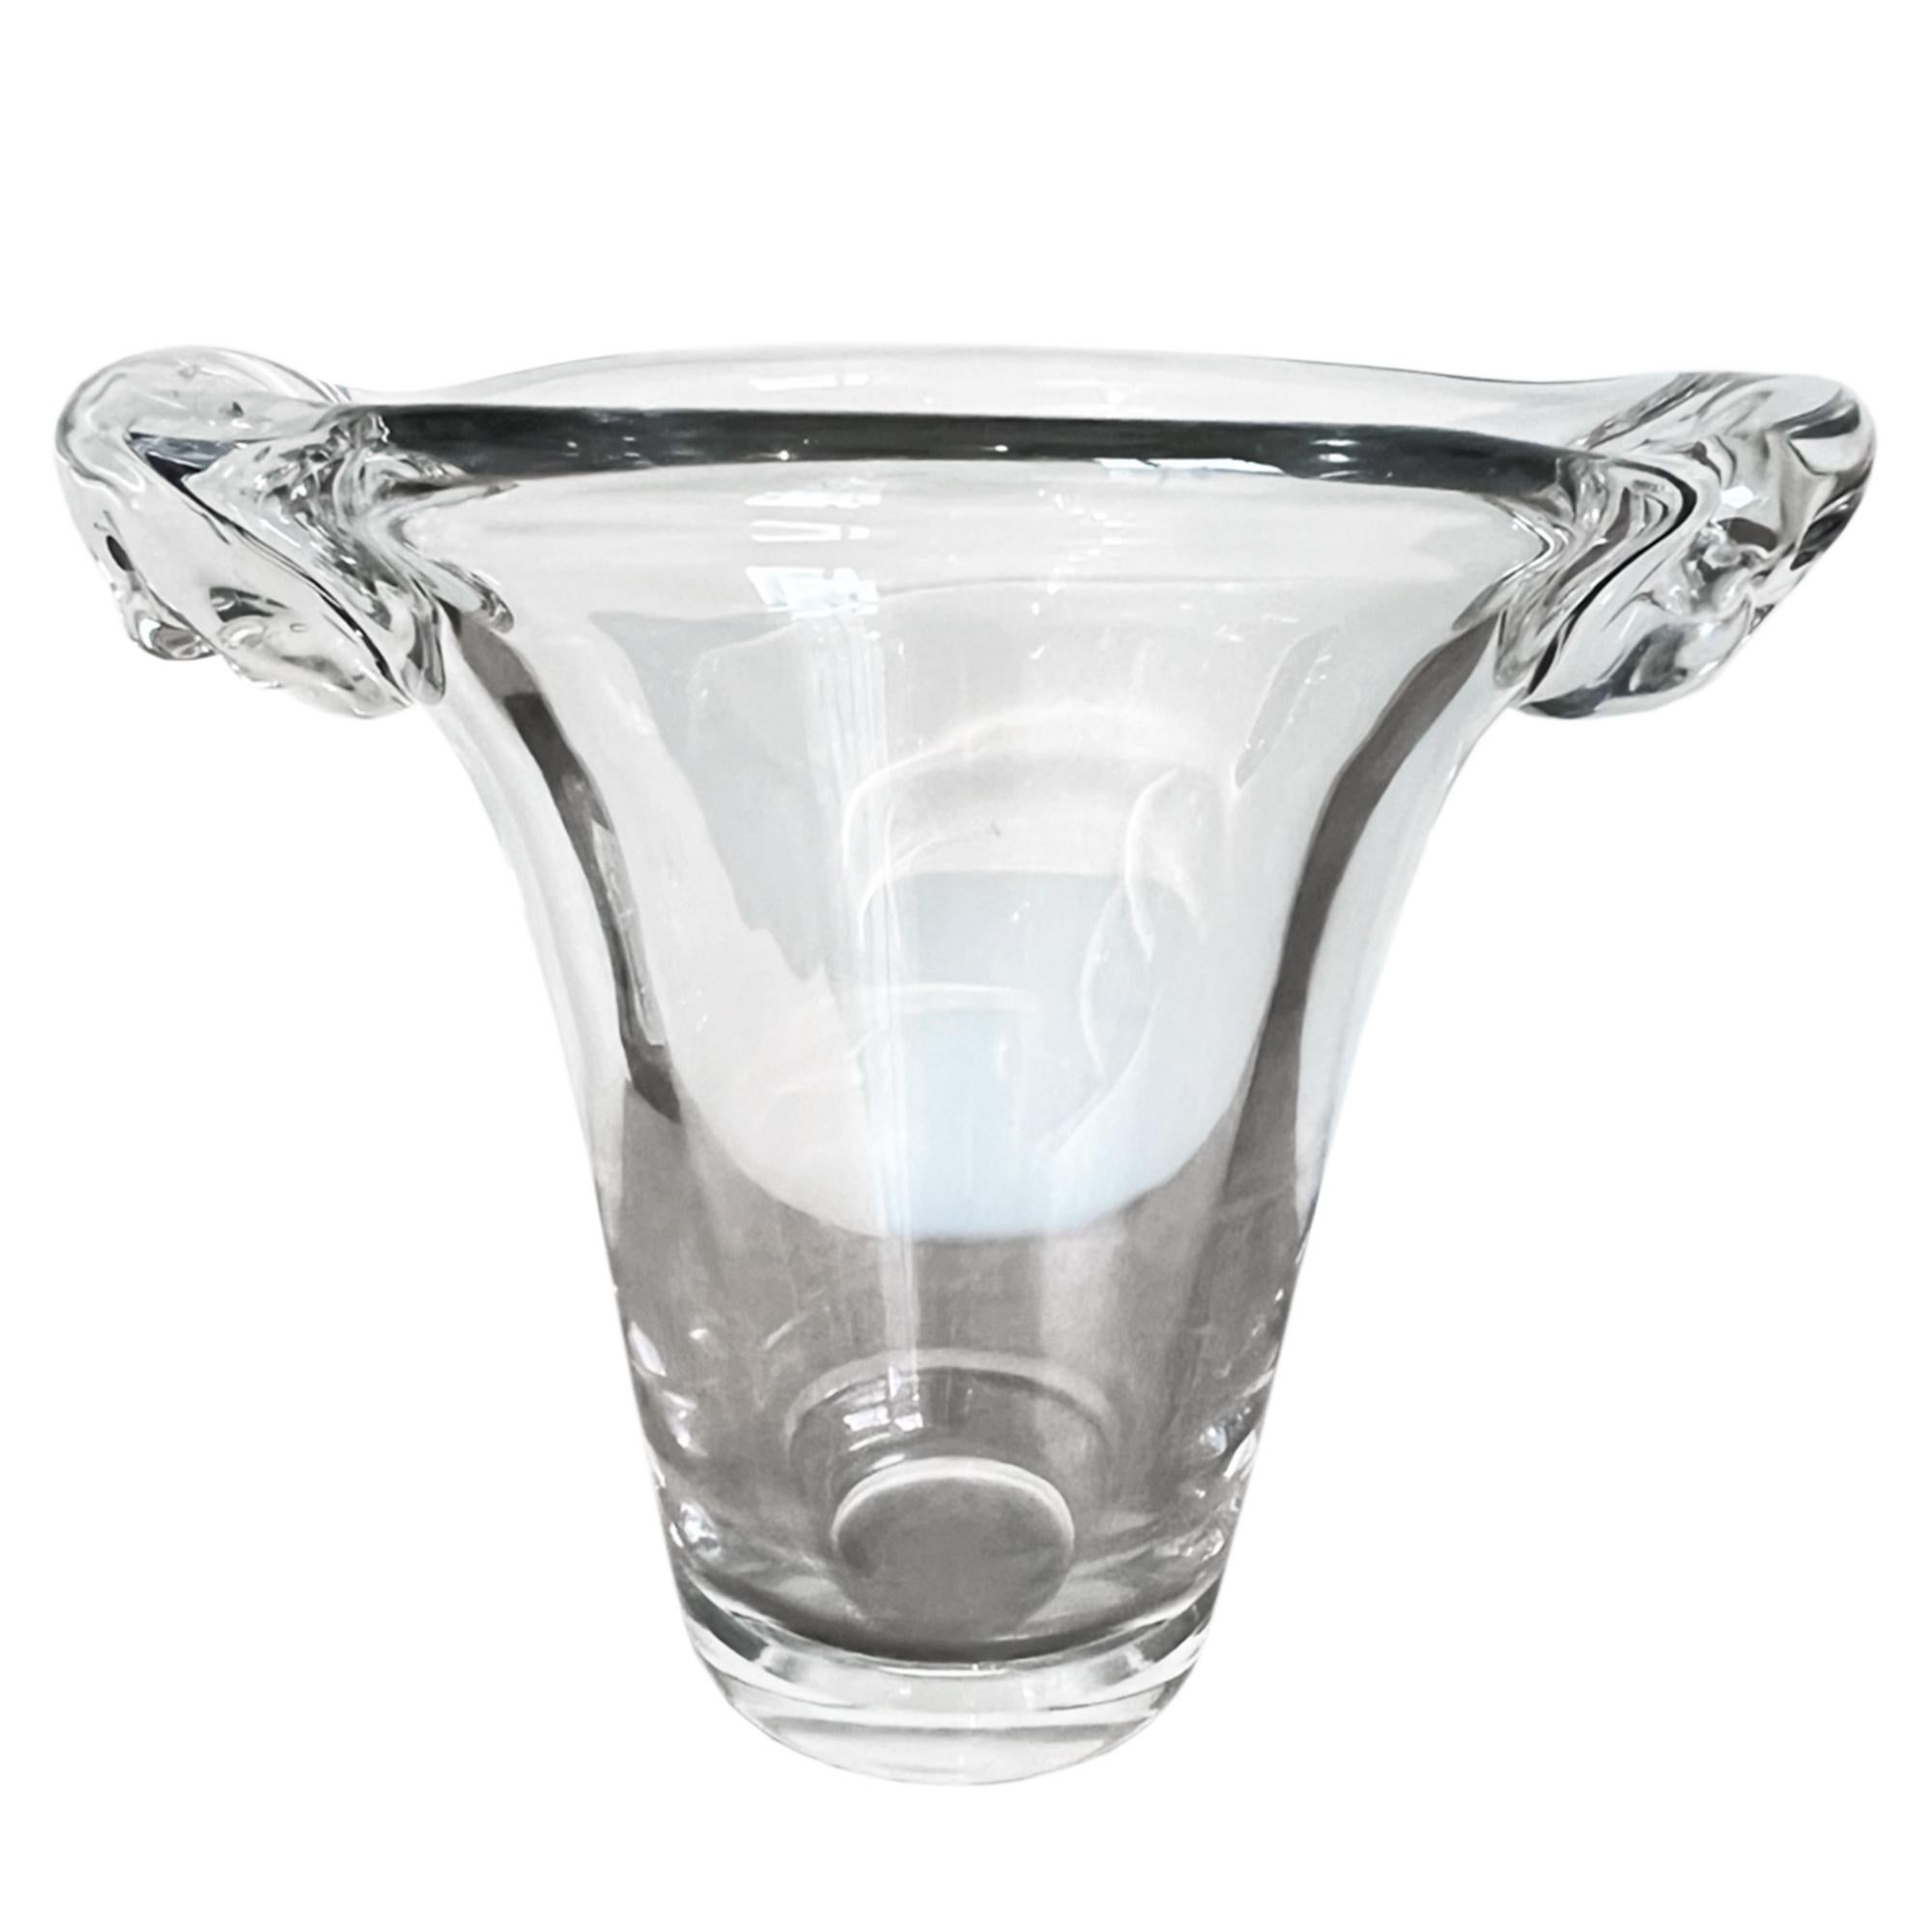 Ce grand vase en verre transparent a été conçu avec un magnifique motif tourbillonnant de chaque côté.

Réalisé par le fabricant Daum dans les années 1960, il peut également être une pièce décorative, ou un vase à fleurs. Verre épais de superbe